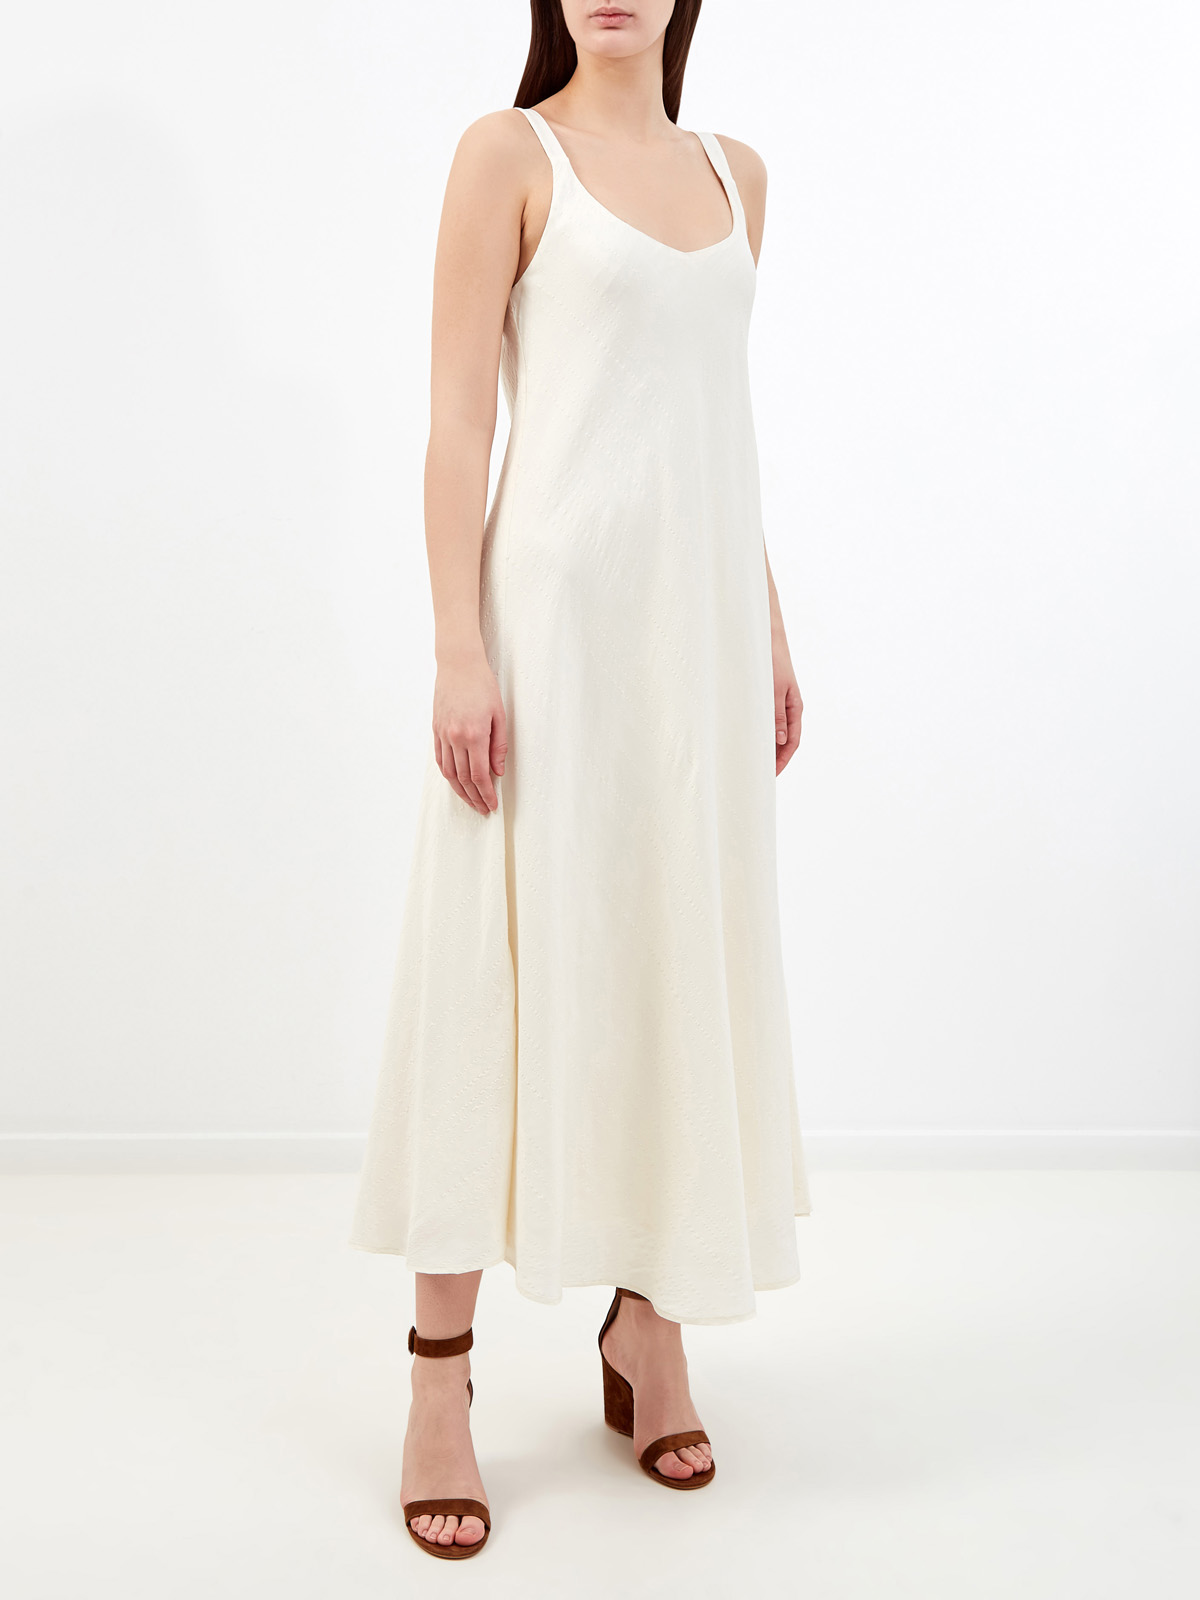 Легкое платье из вискозы и льна с декоративной прострочкой RE VERA, цвет белый, размер M;L;S - фото 3